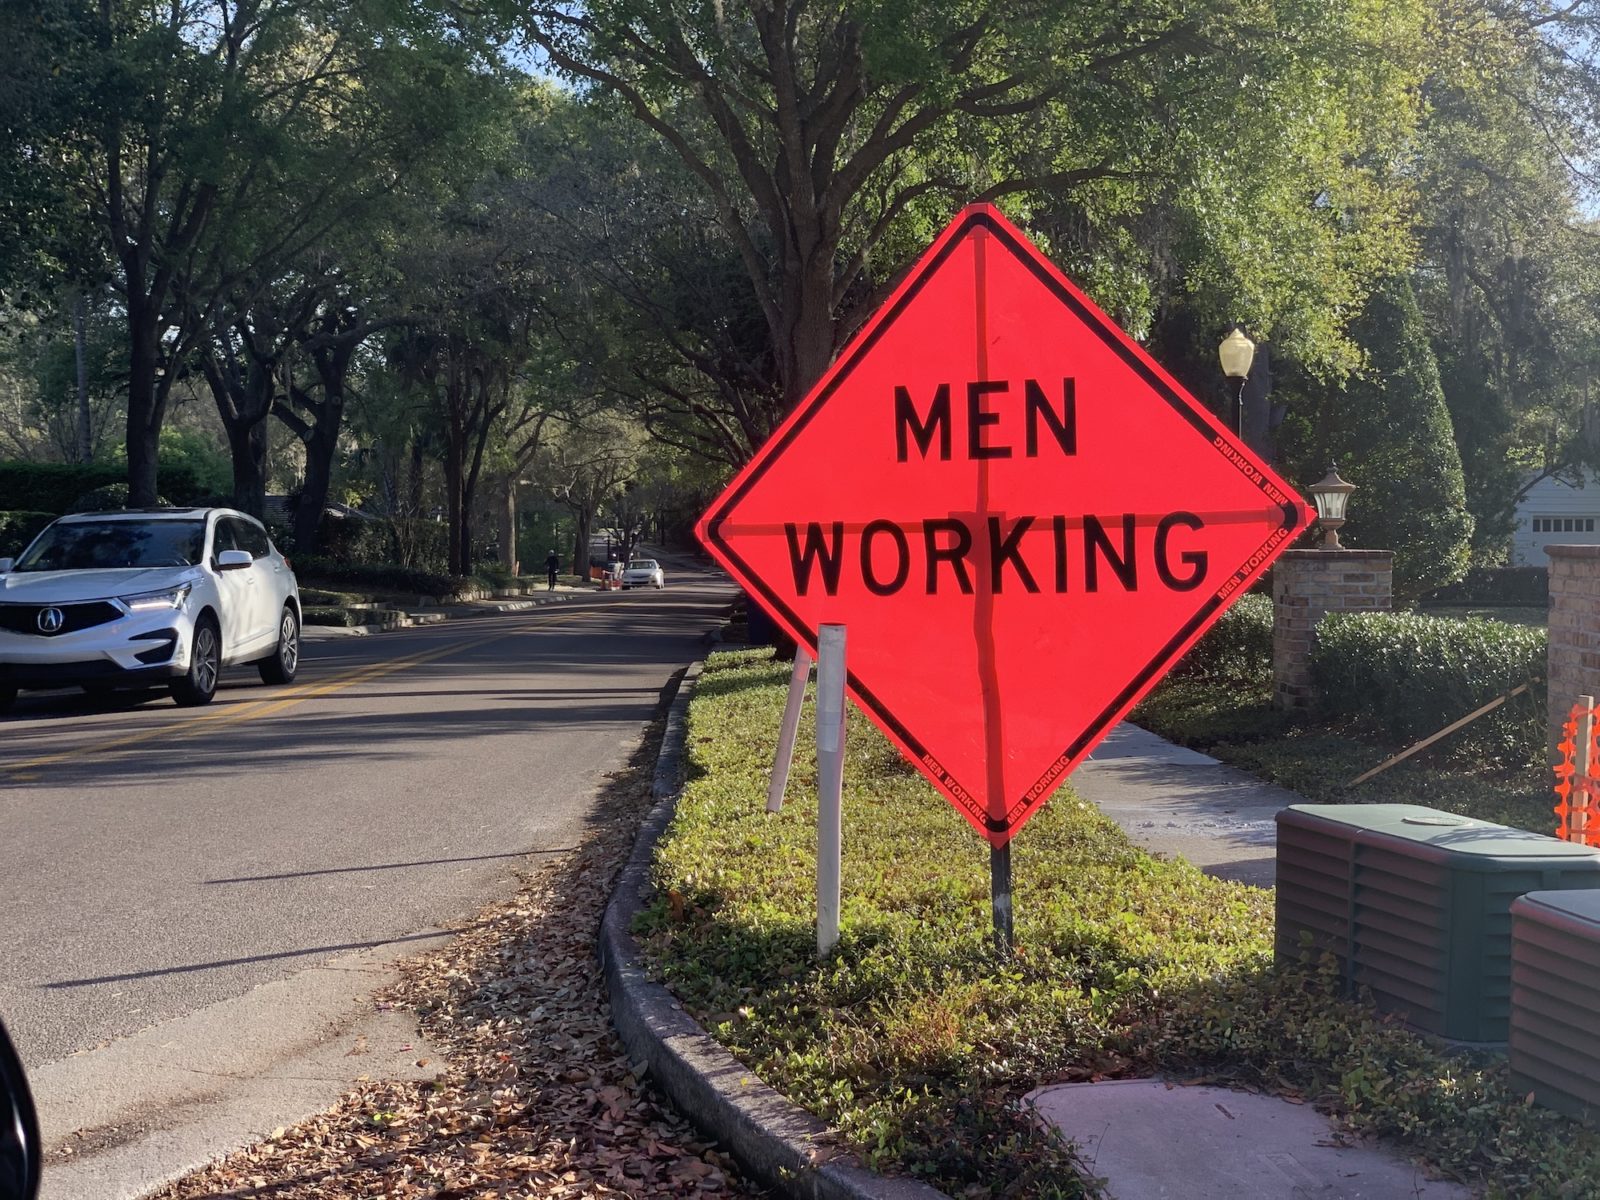 A large, orange "Men Working" sign propped up on a sidewalk.